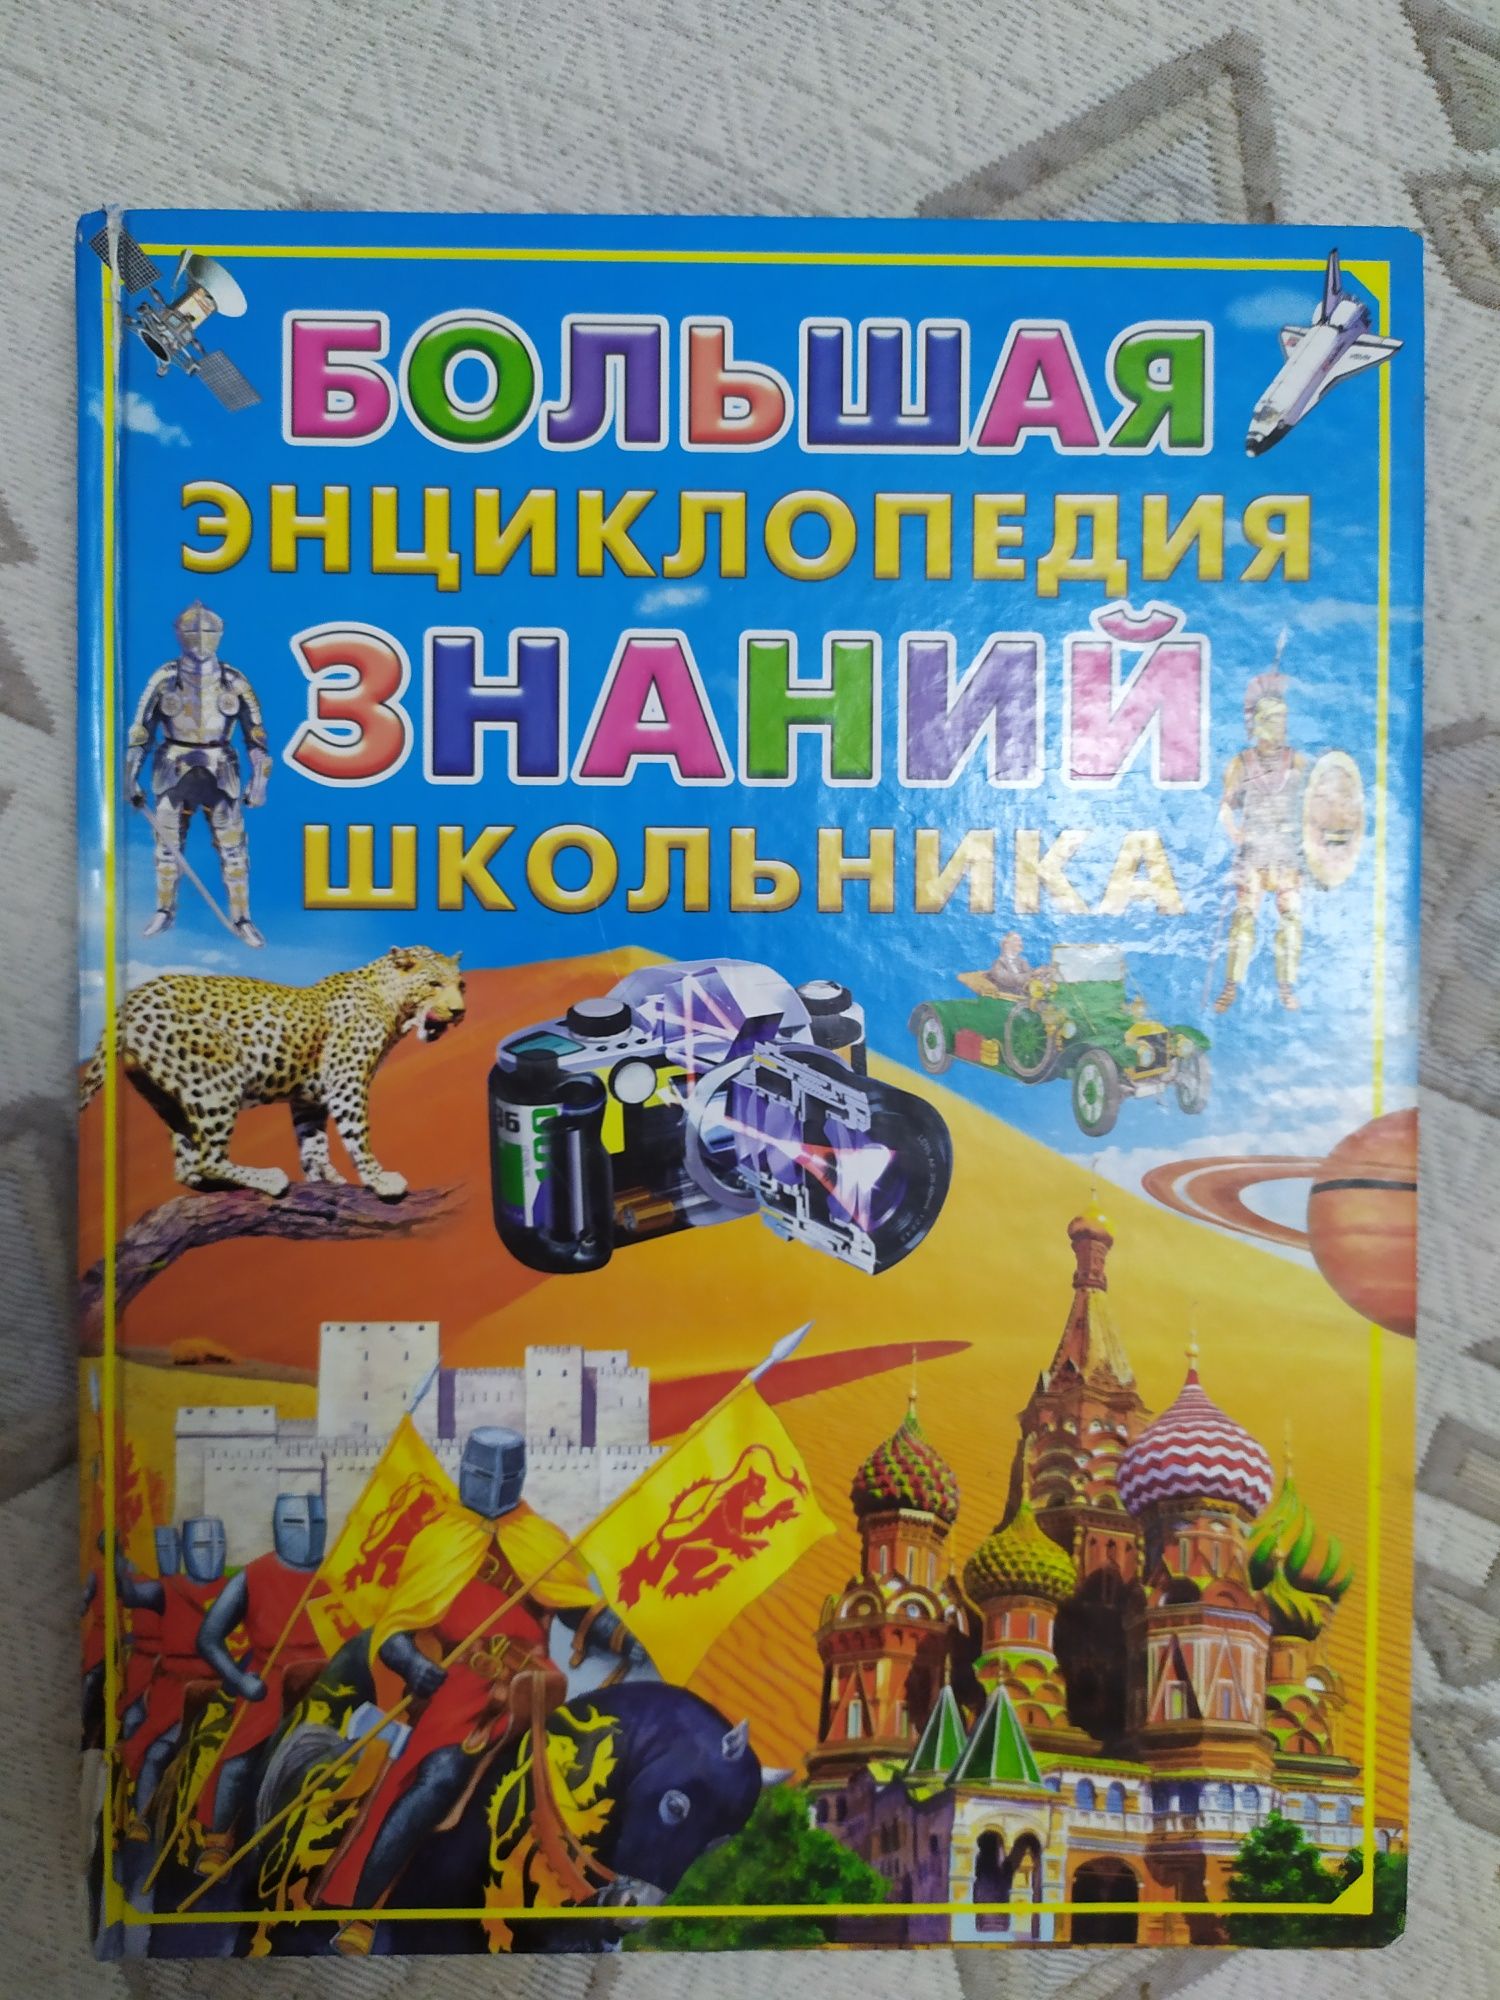 Продам познавательные энциклопедии для детей